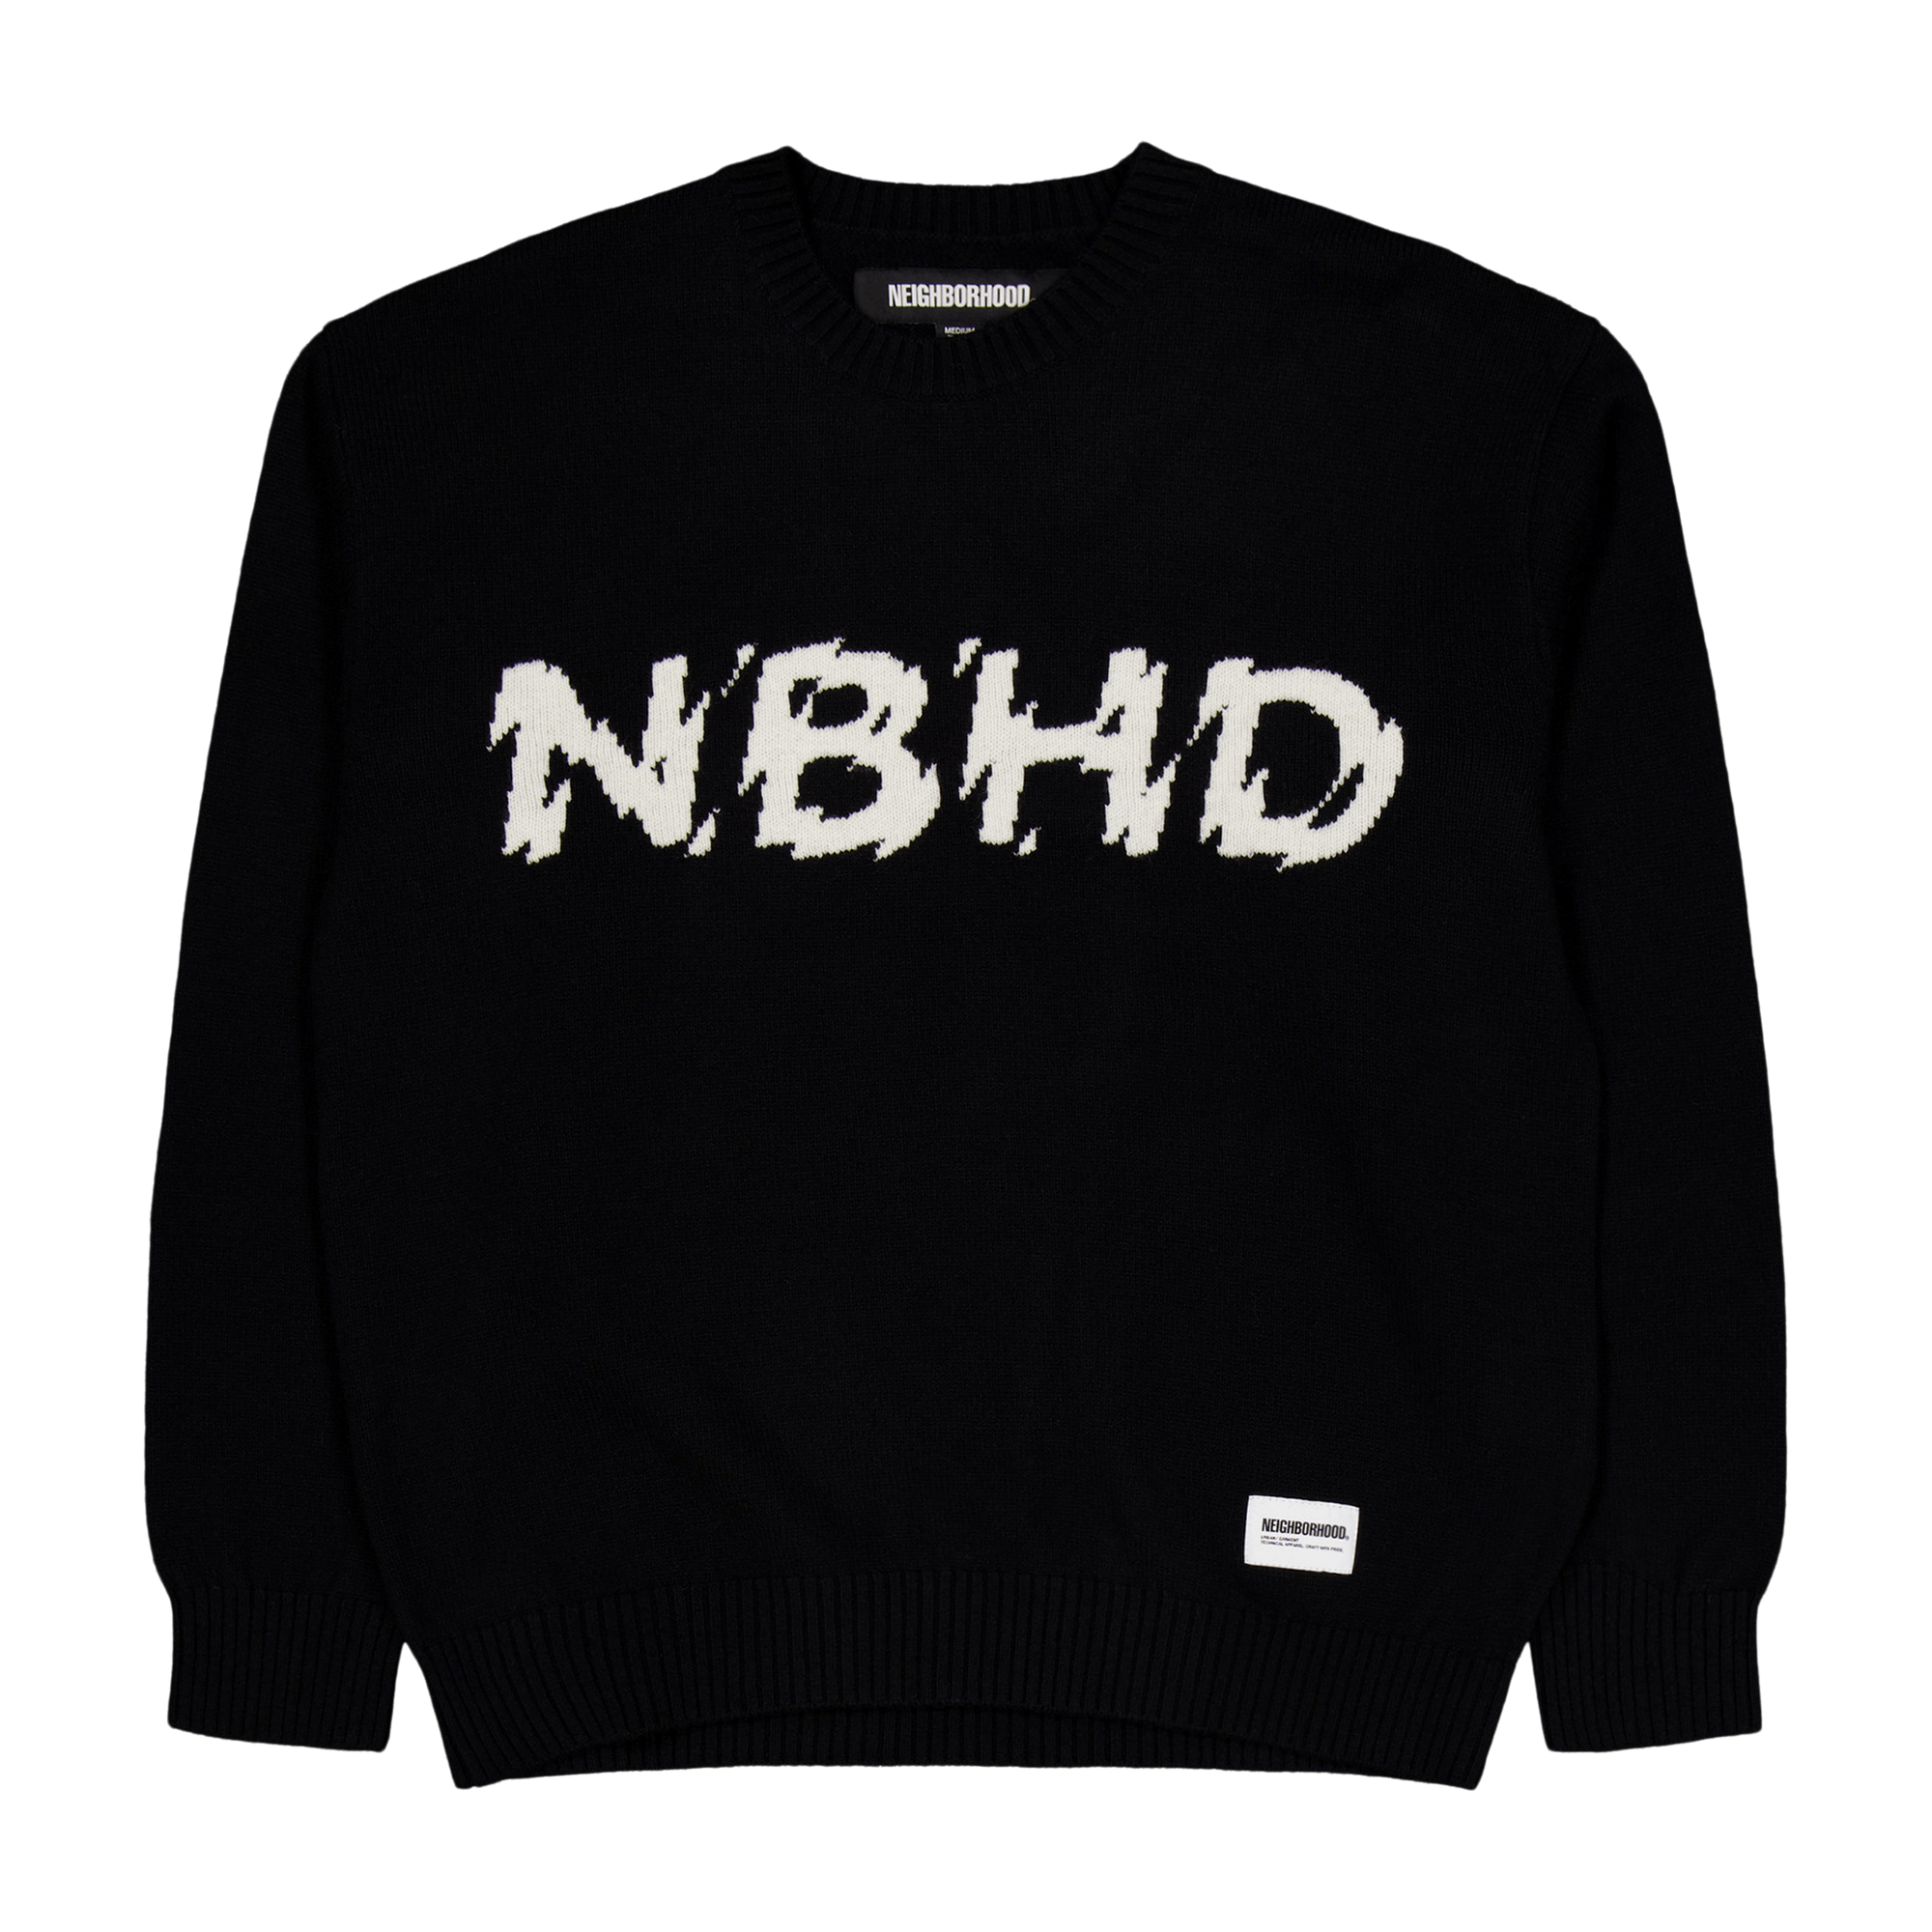 Intarsia Sweater Black